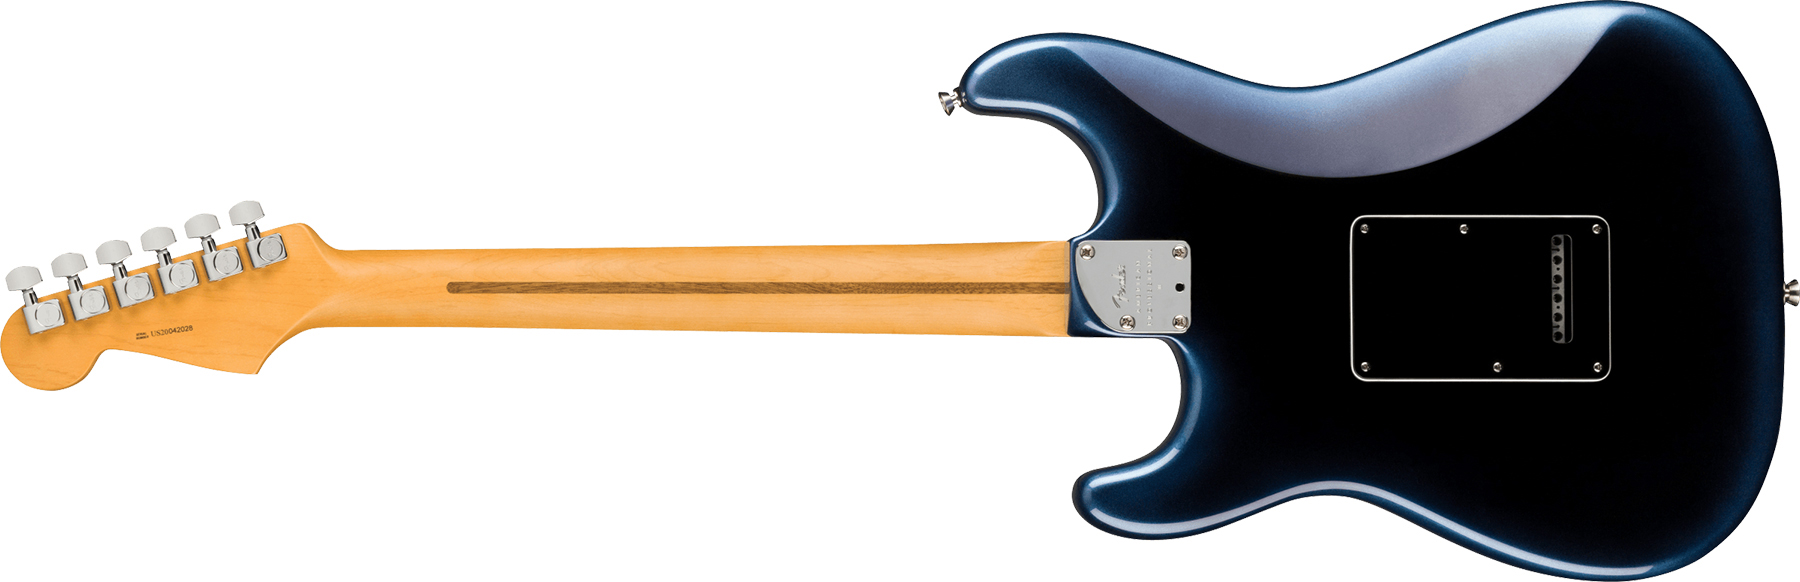 Fender Strat American Professional Ii Usa Mn - Dark Night - Elektrische gitaar in Str-vorm - Variation 1